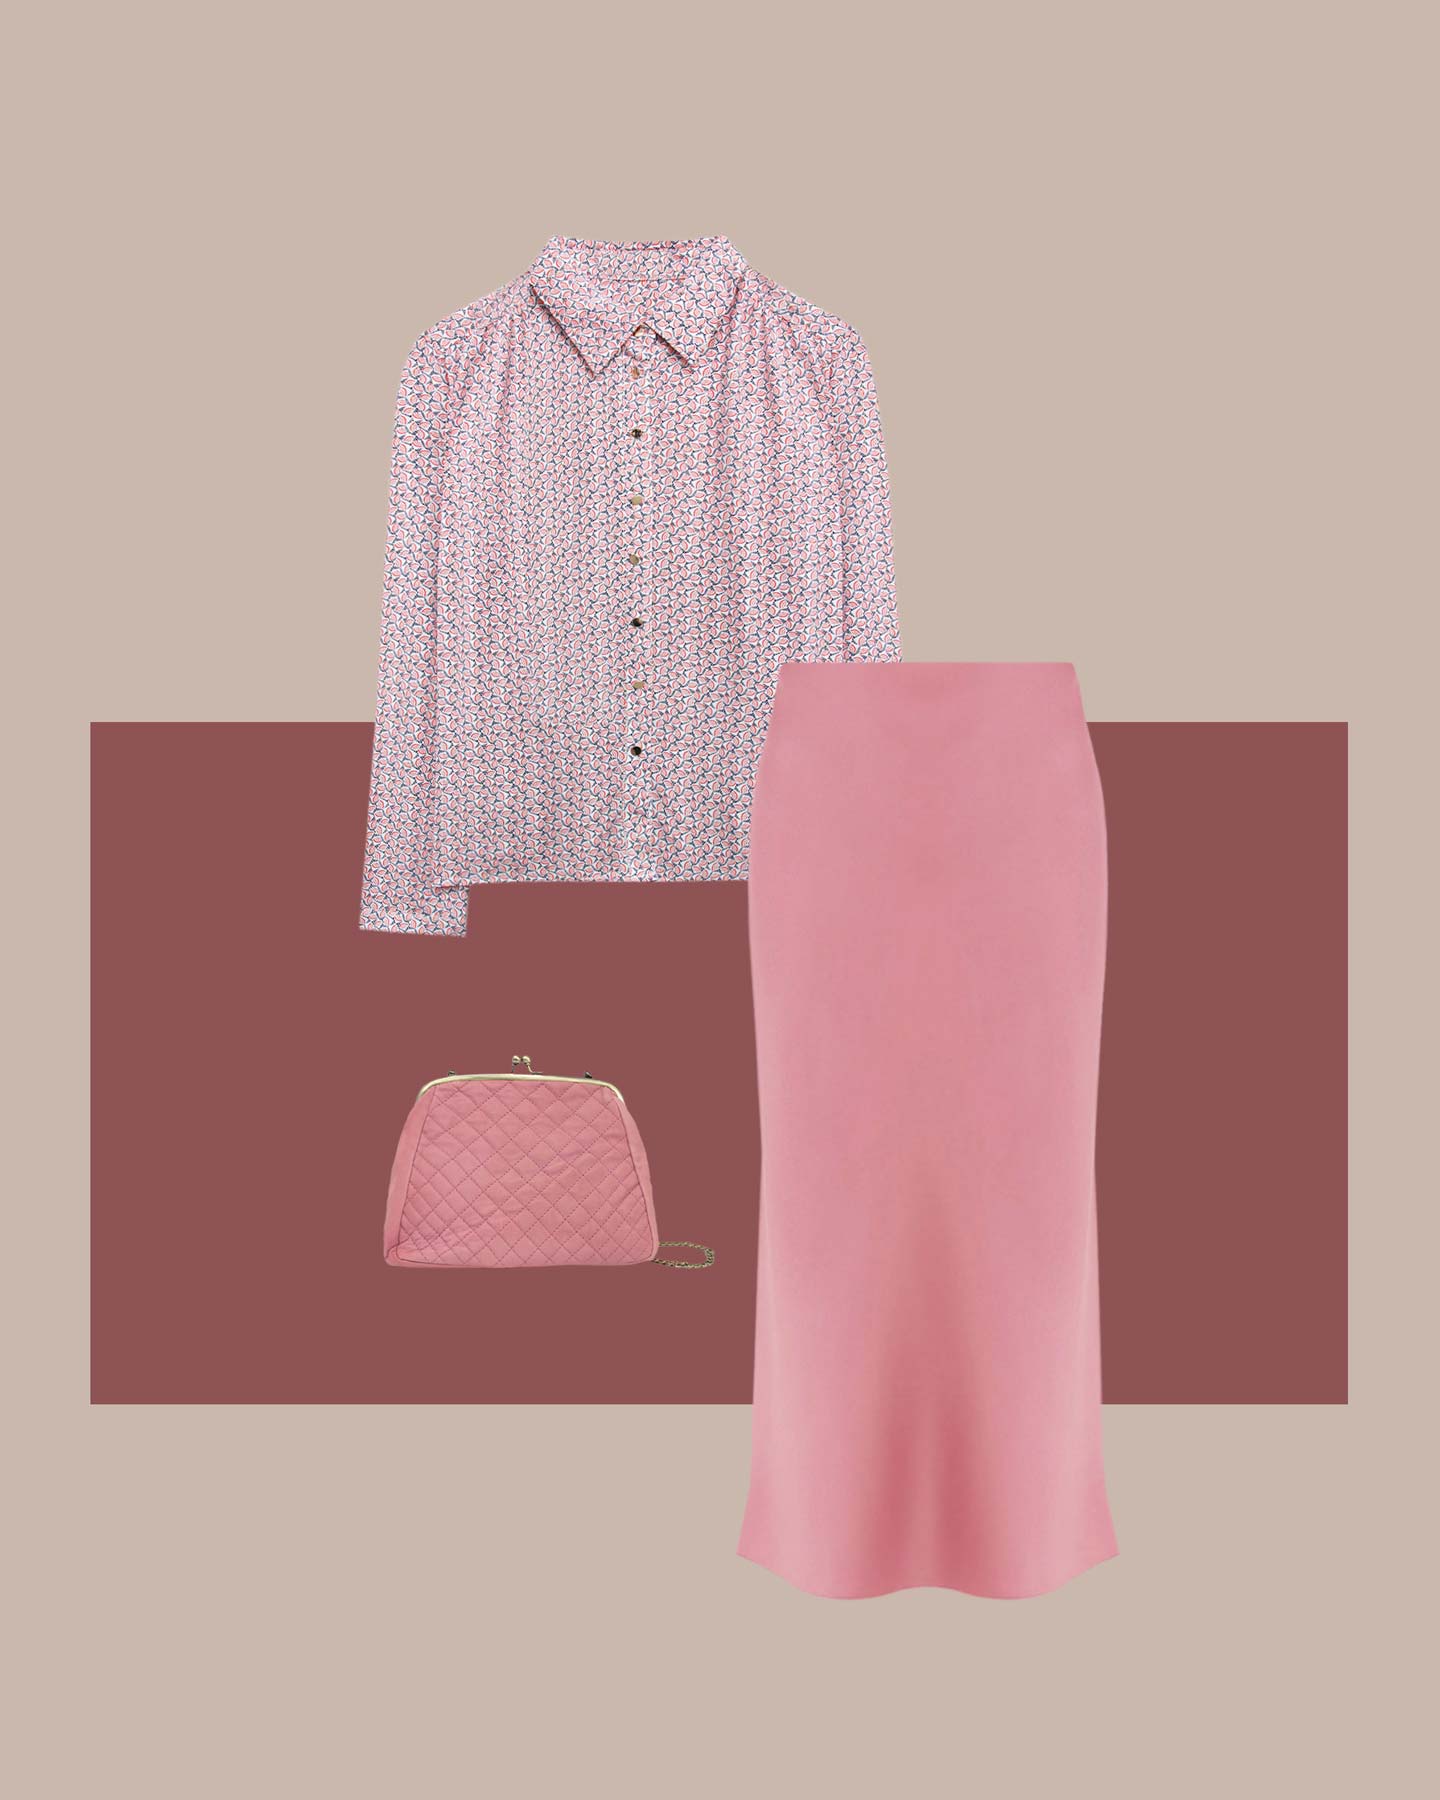 Cómo combinar el color rosa esta temporada - Lookiero Blog